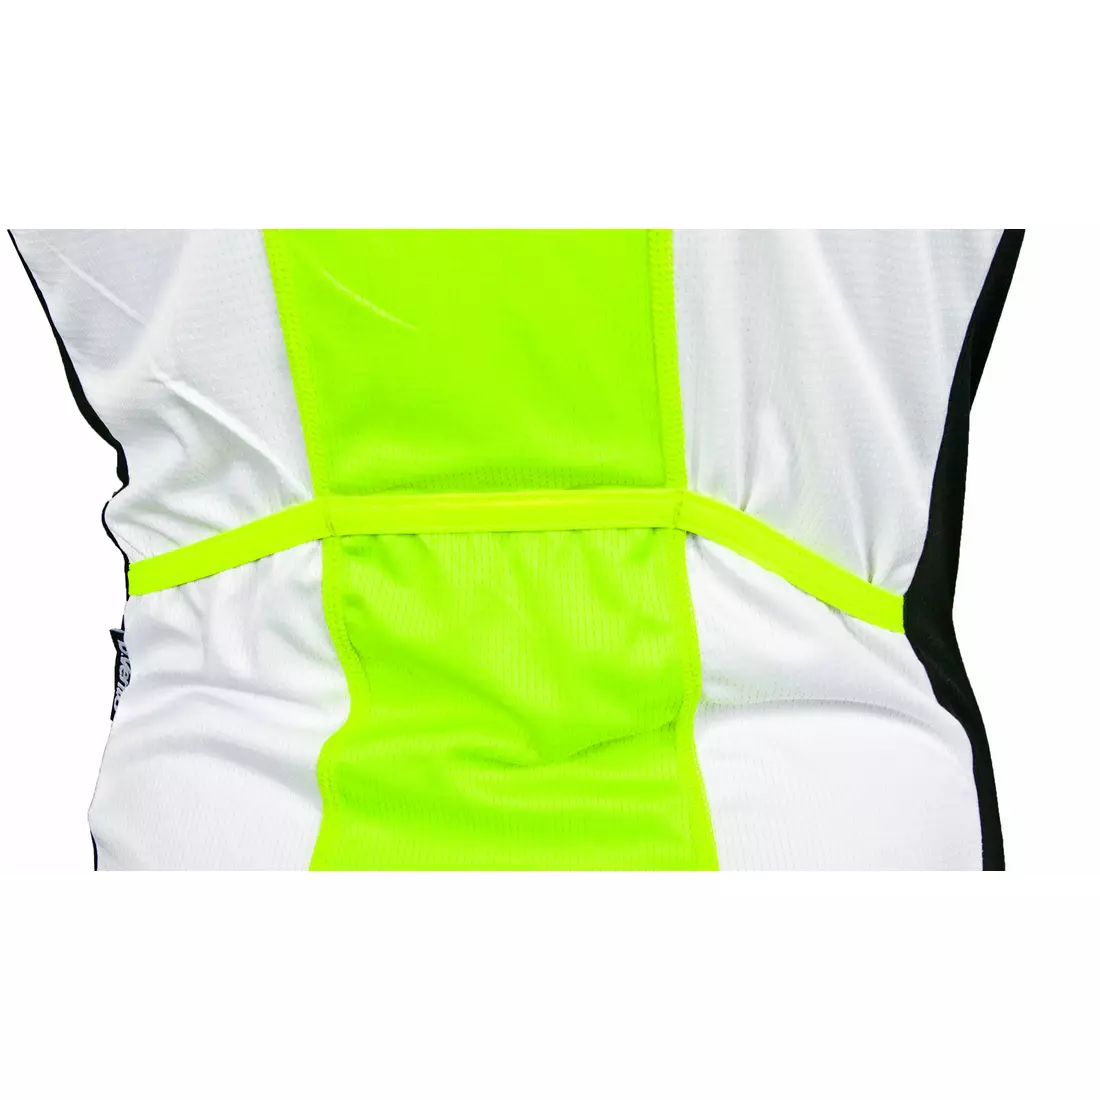 DEKO HAITI II men's sleeveless cycling jersey, white-fluorine